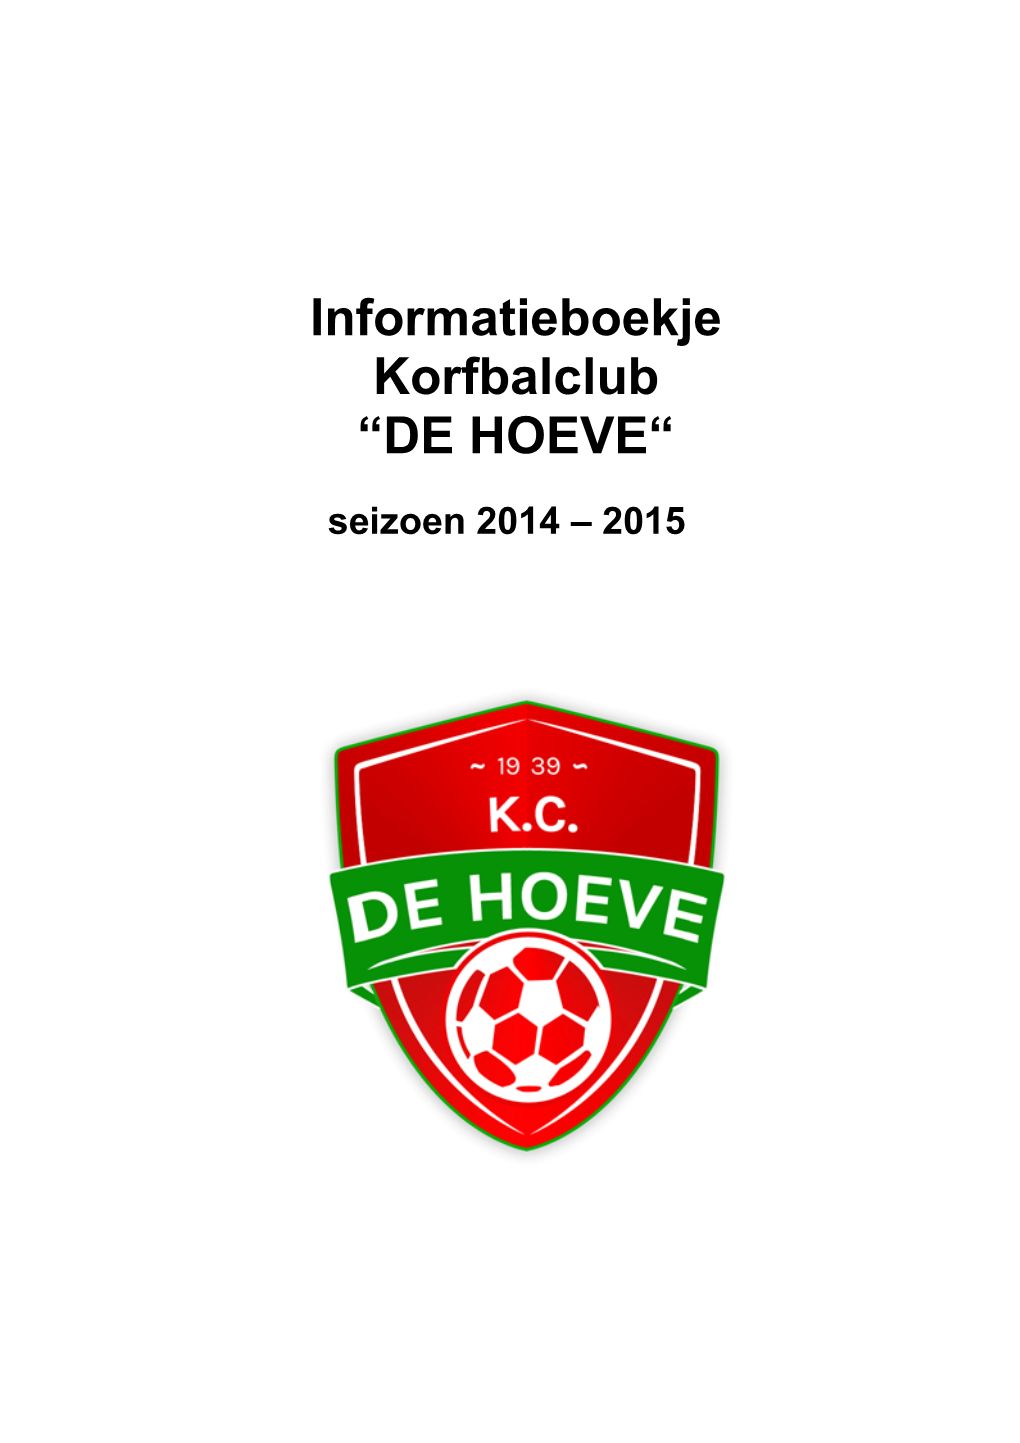 Informatieboekje Korfbalclub “DE HOEVE“